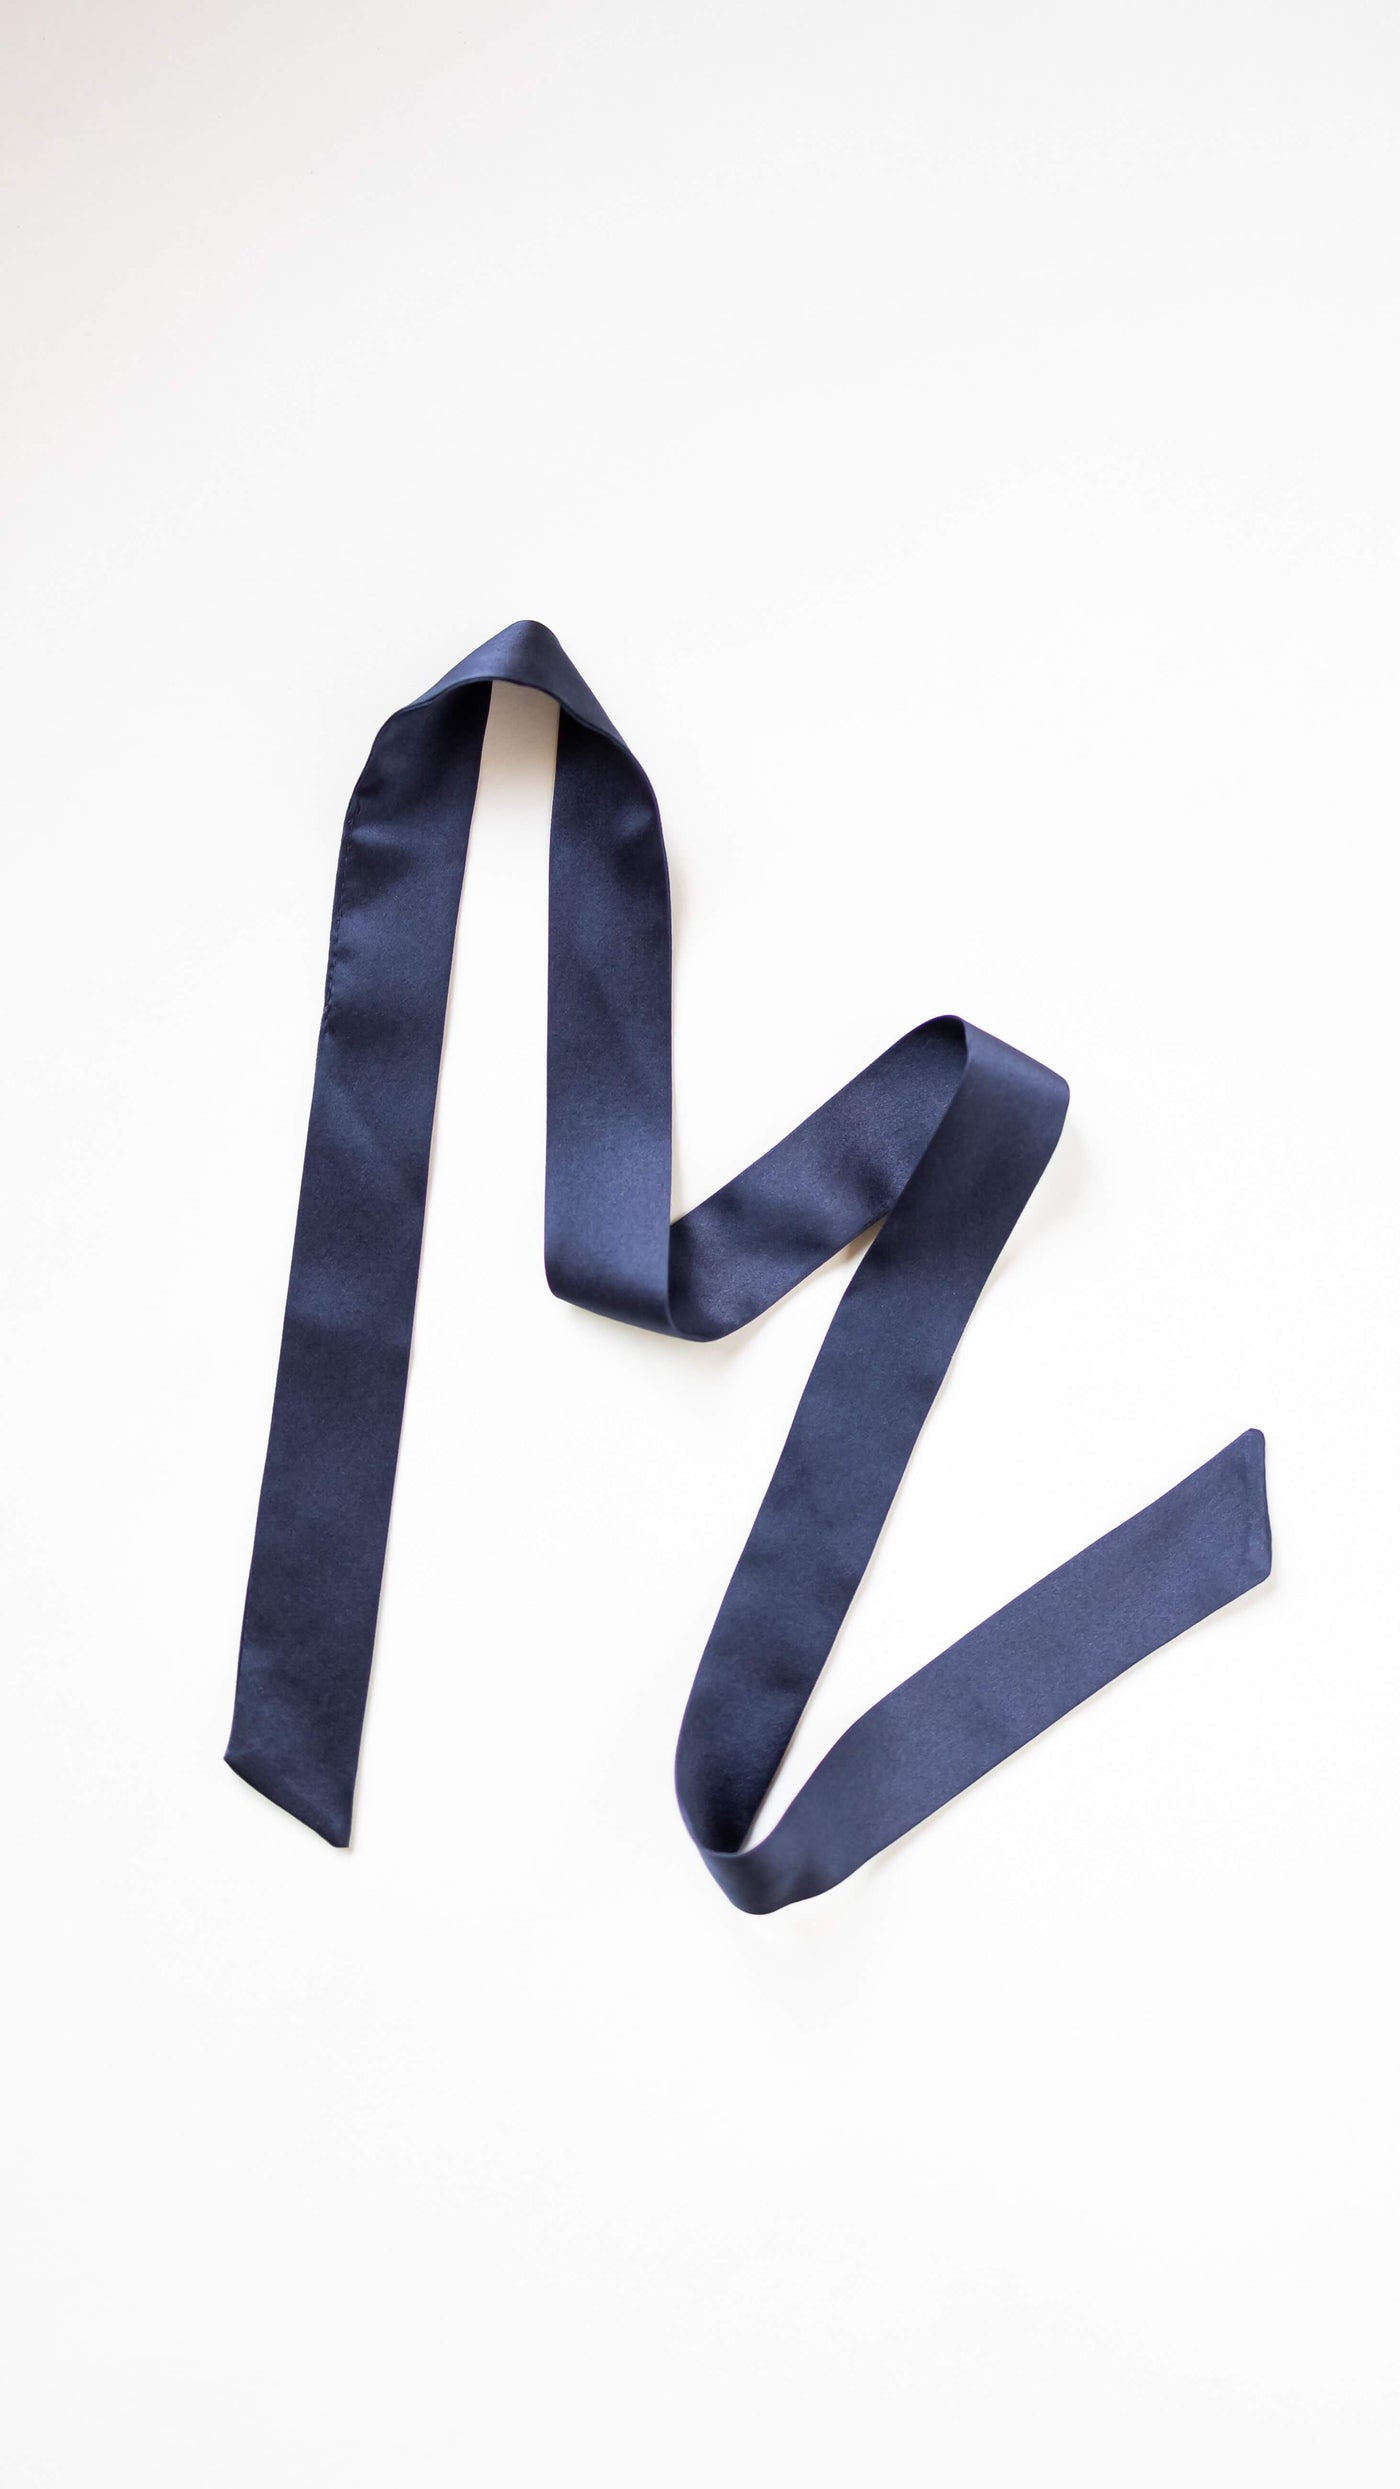 Marineblaues Haarband aus reiner Seide von CURLY N COVERED, ausgelegt vor weißem Hintergrund.